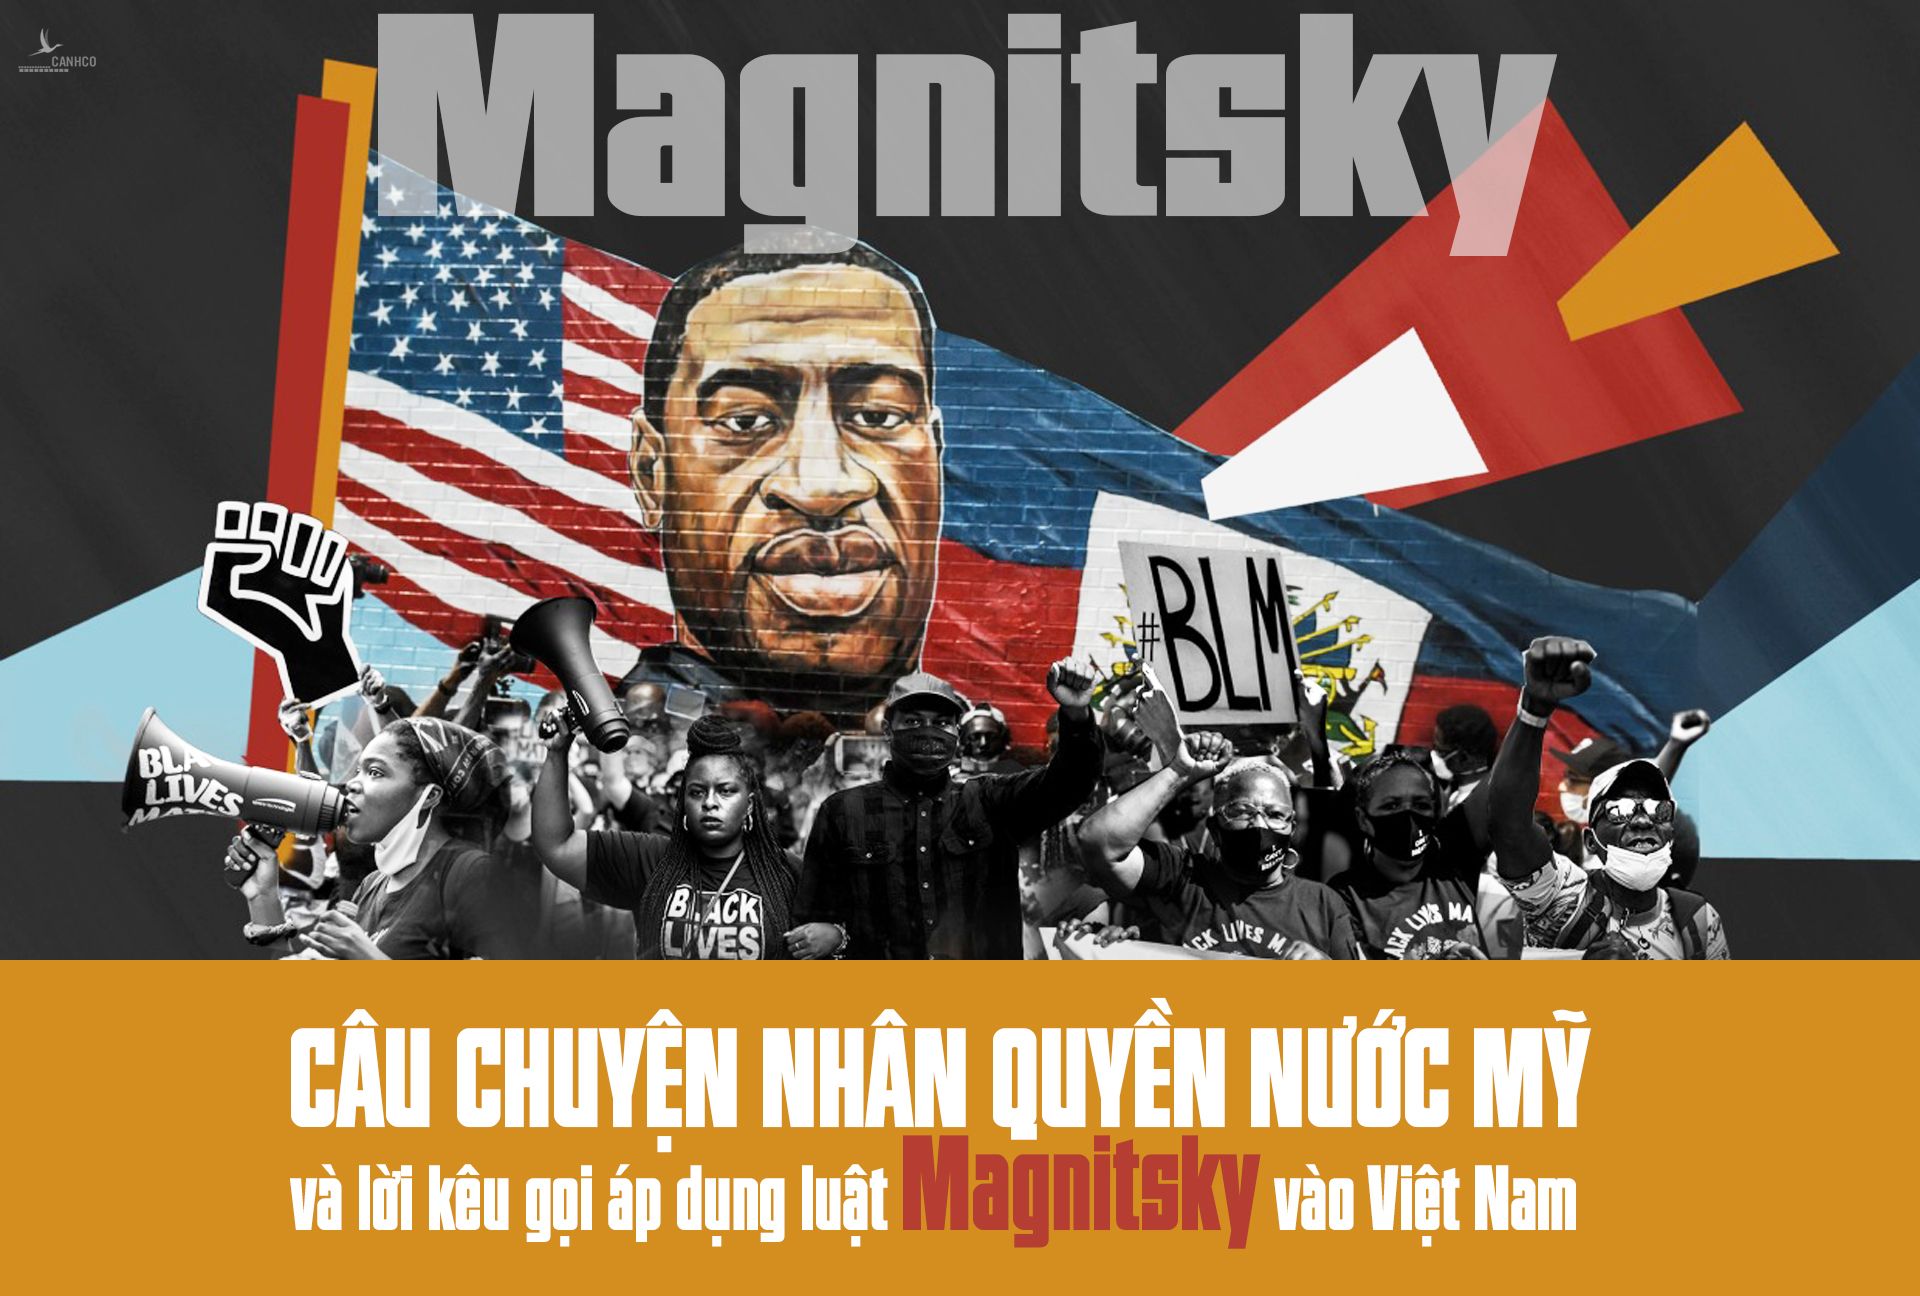 Câu chuyện nhân quyền nước Mỹ và lời kêu gọi áp dụng luật Magnitsky vào Việt Nam